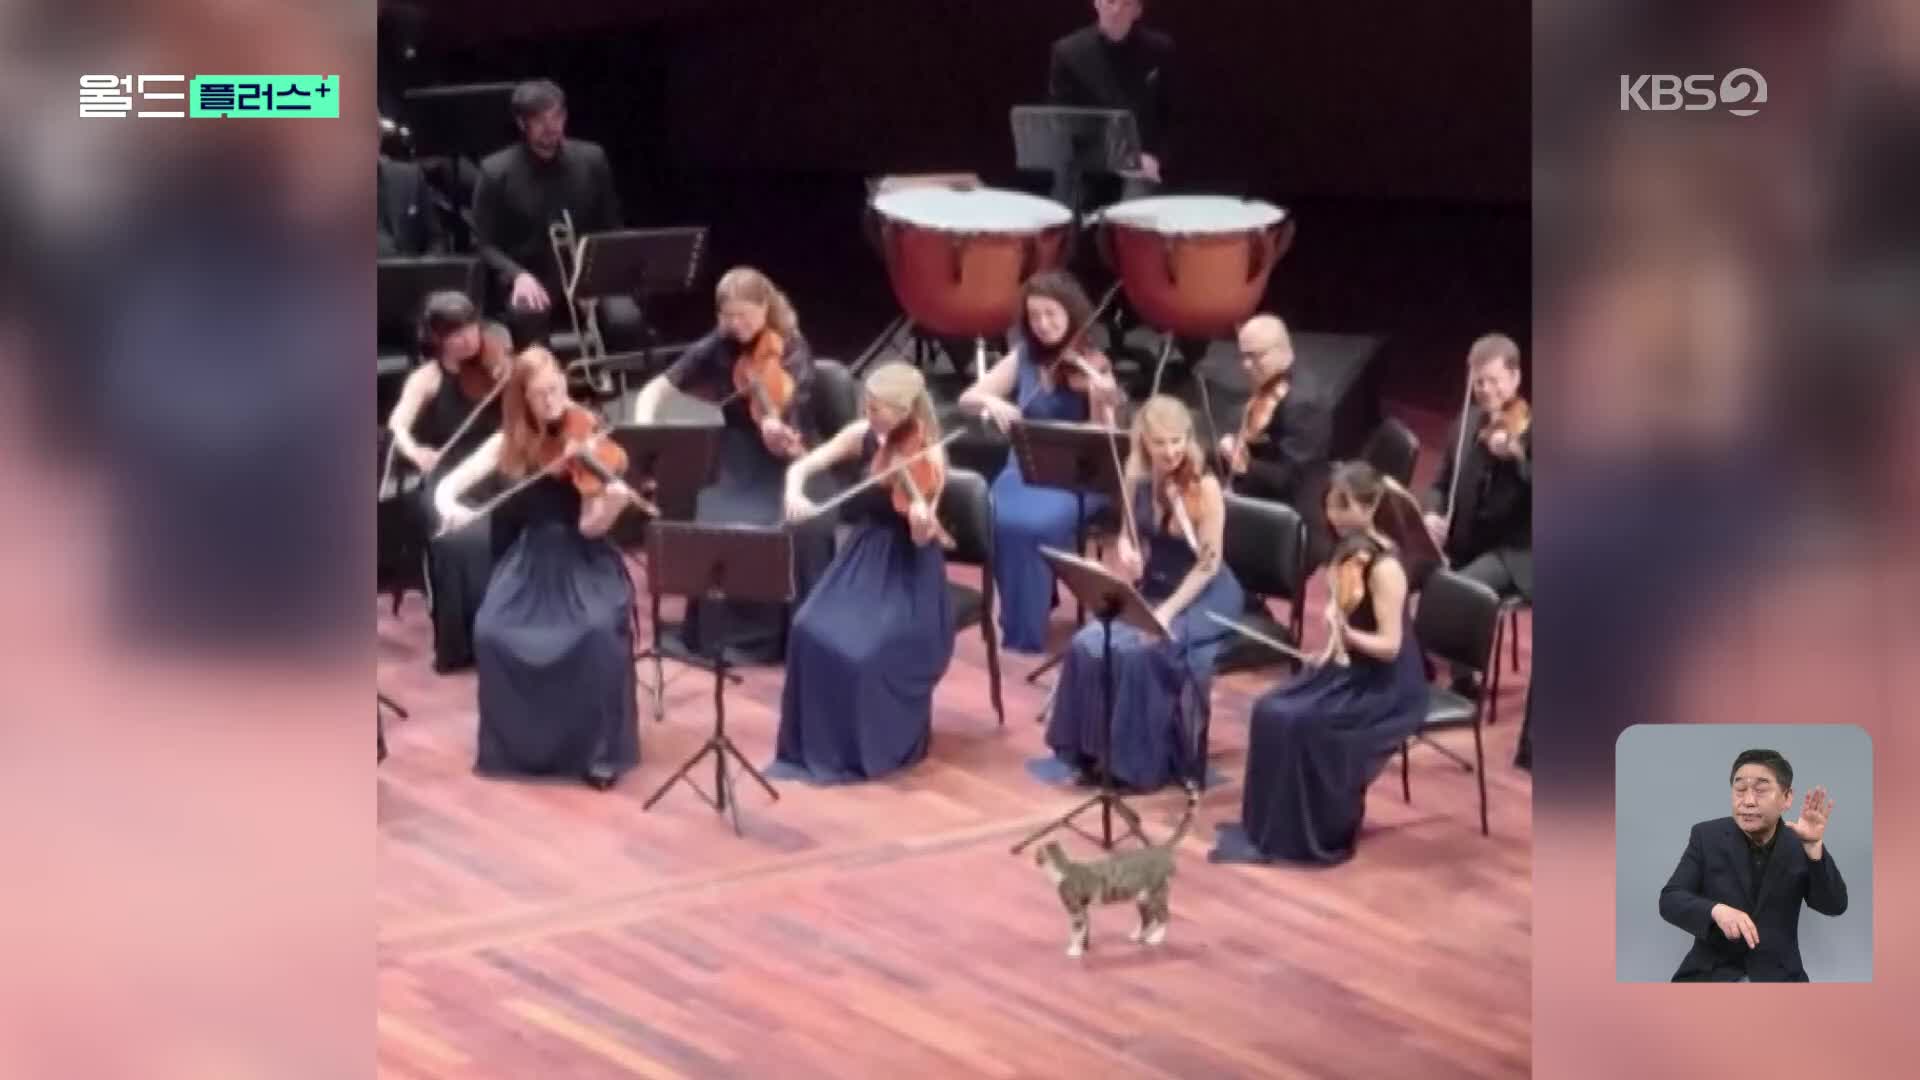 [월드 플러스] “나도 감상한다냥”…오케스트라 공연 속 고양이